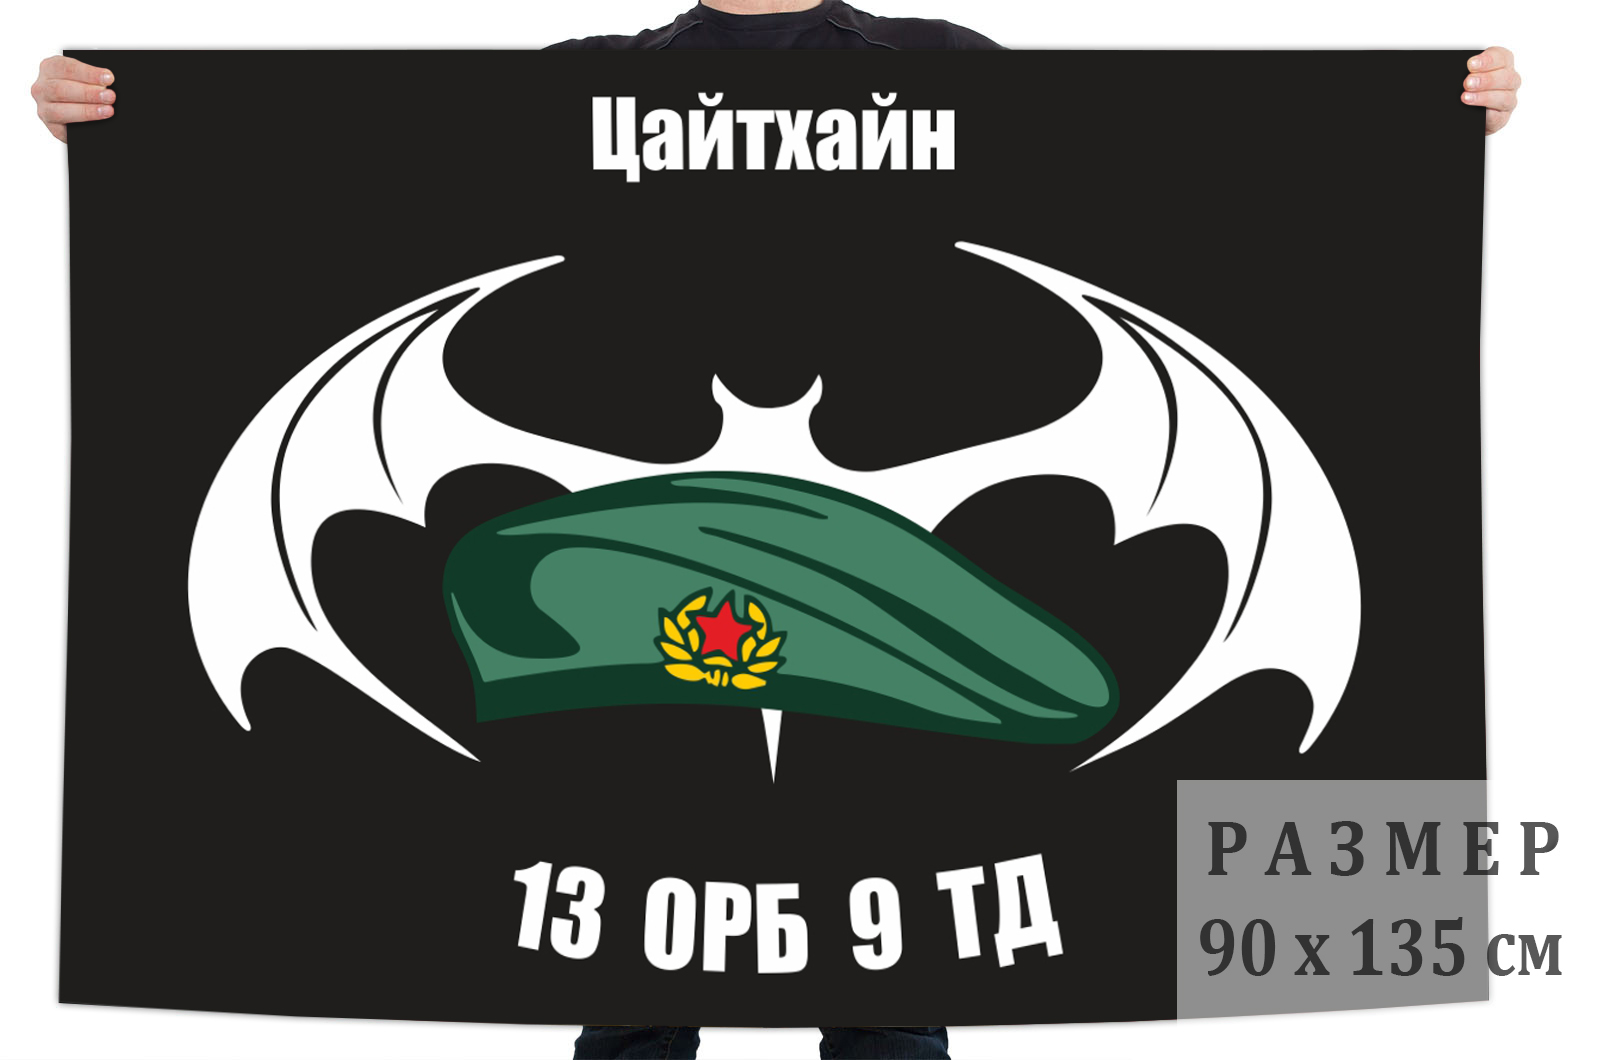 Флаг 13 ОРБ 9 ТД  (ГСВГ, Цайтхайн)